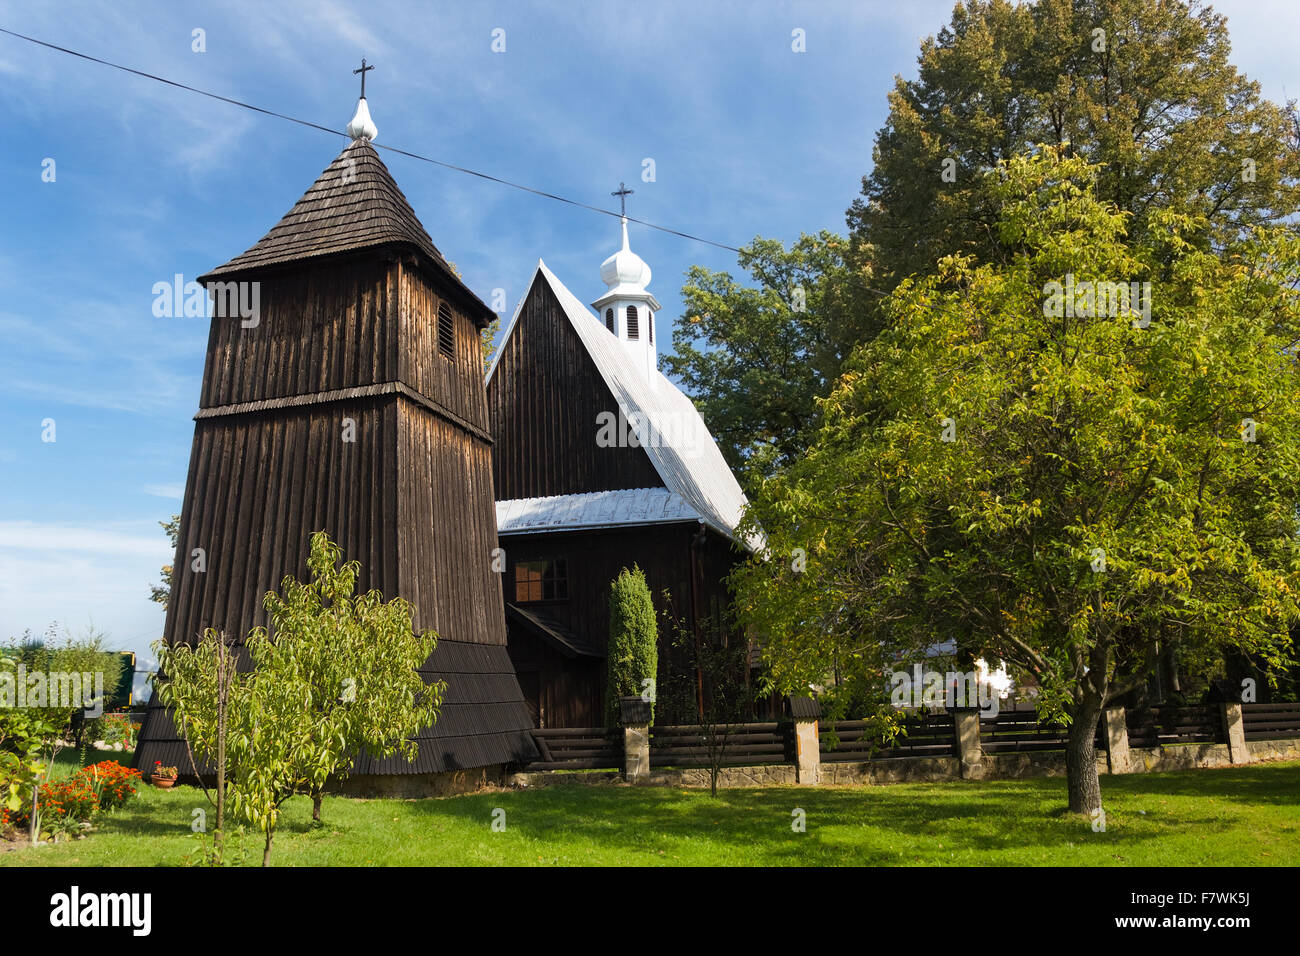 Cité médiévale de l'église en bois du xvie siècle. Église de Saint-nicolas dans l'Moszczenica Stary Sacz, Nizna. La Pologne. Banque D'Images